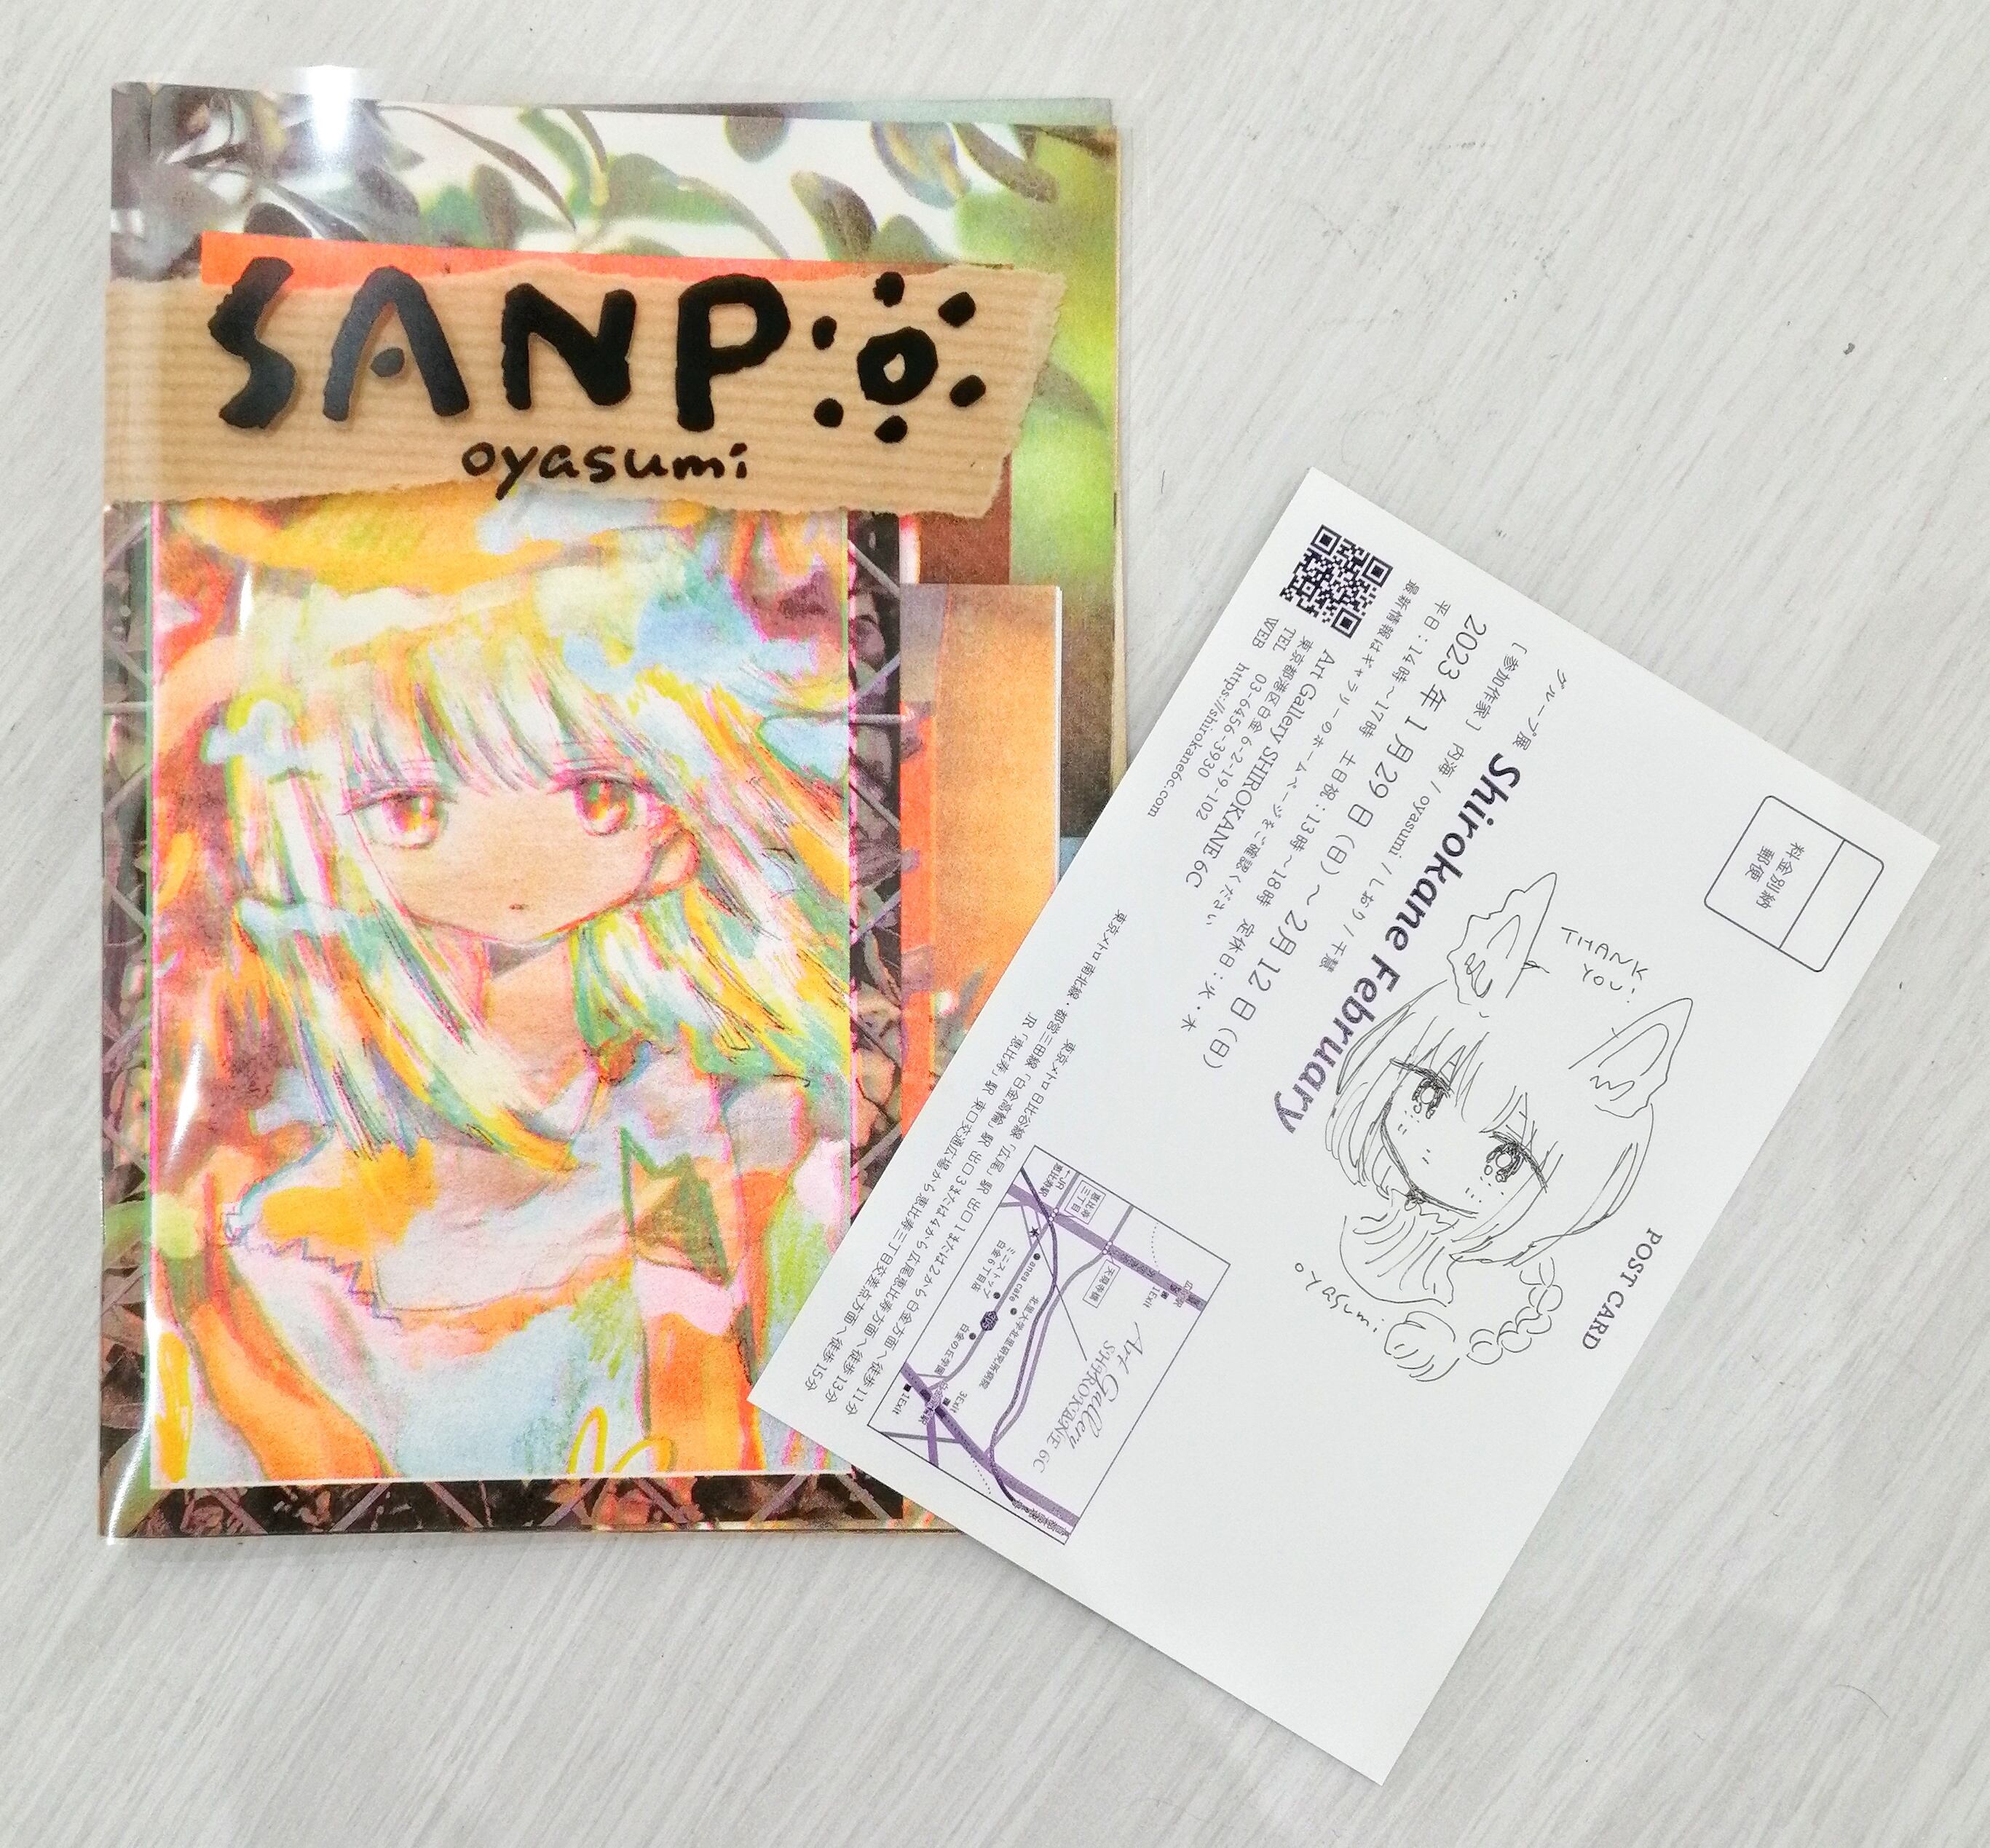 oyasumi イラスト集『SANPO』+ ドローイング入りDM | Shirokane 6c SHOP